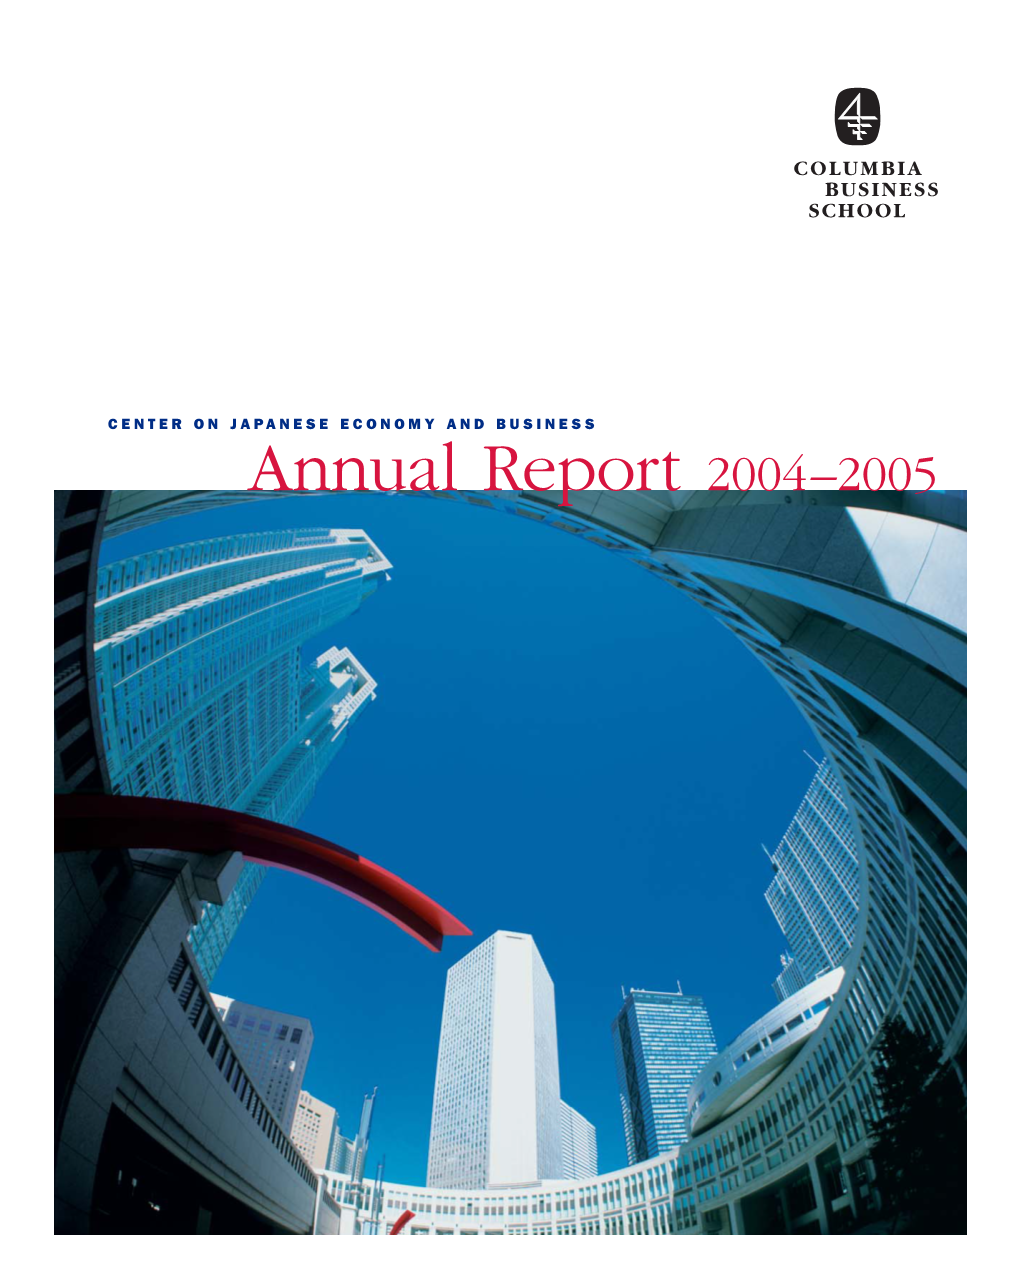 CJEB Annual Report 2004-2005